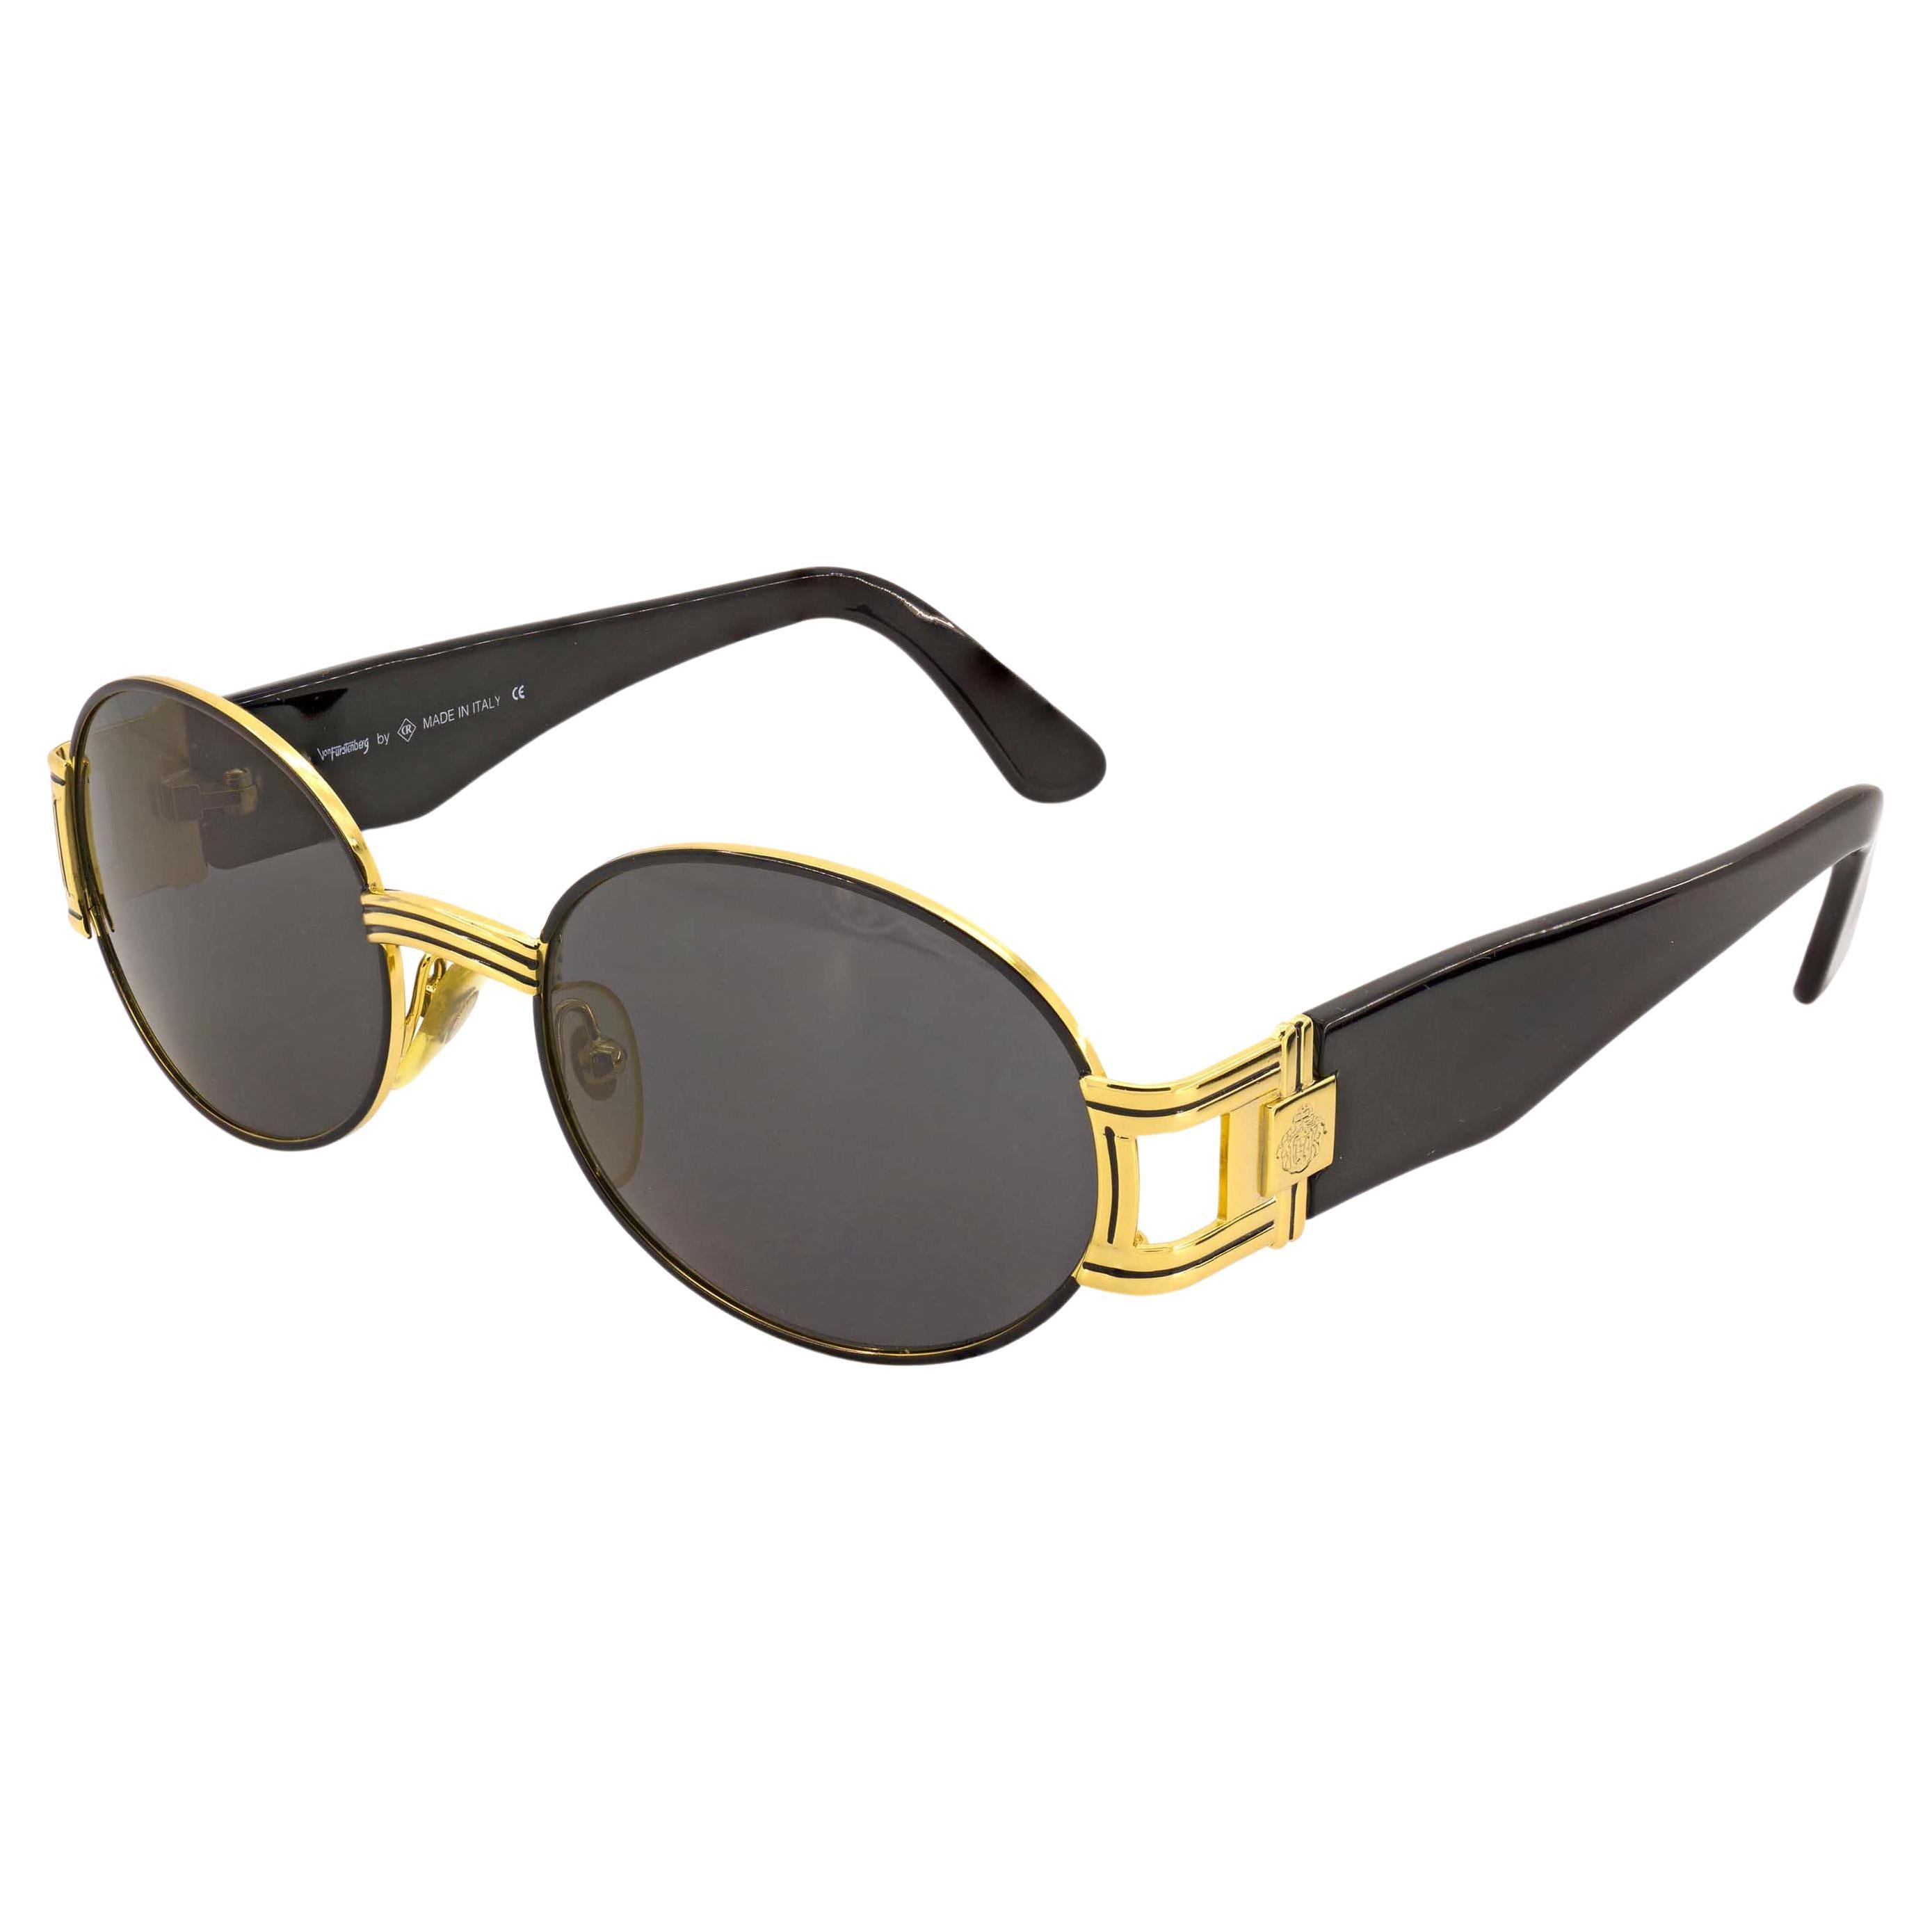 Prince Egon Von Furstenberg vintage sunglasses For Sale at 1stDibs